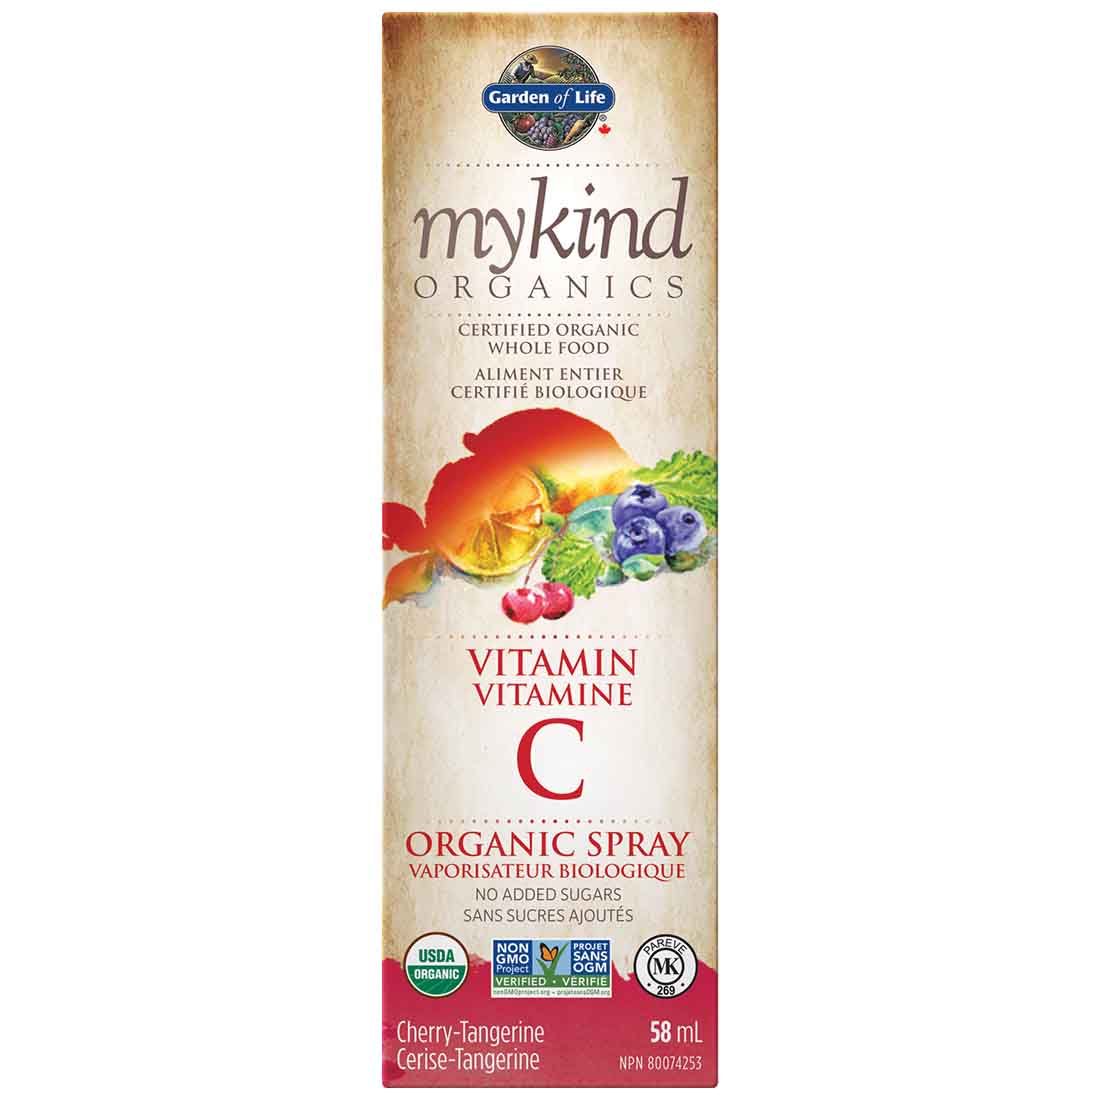 Garden of Life mykind Organics Vitamin C Organic Throat Spray, 58ml